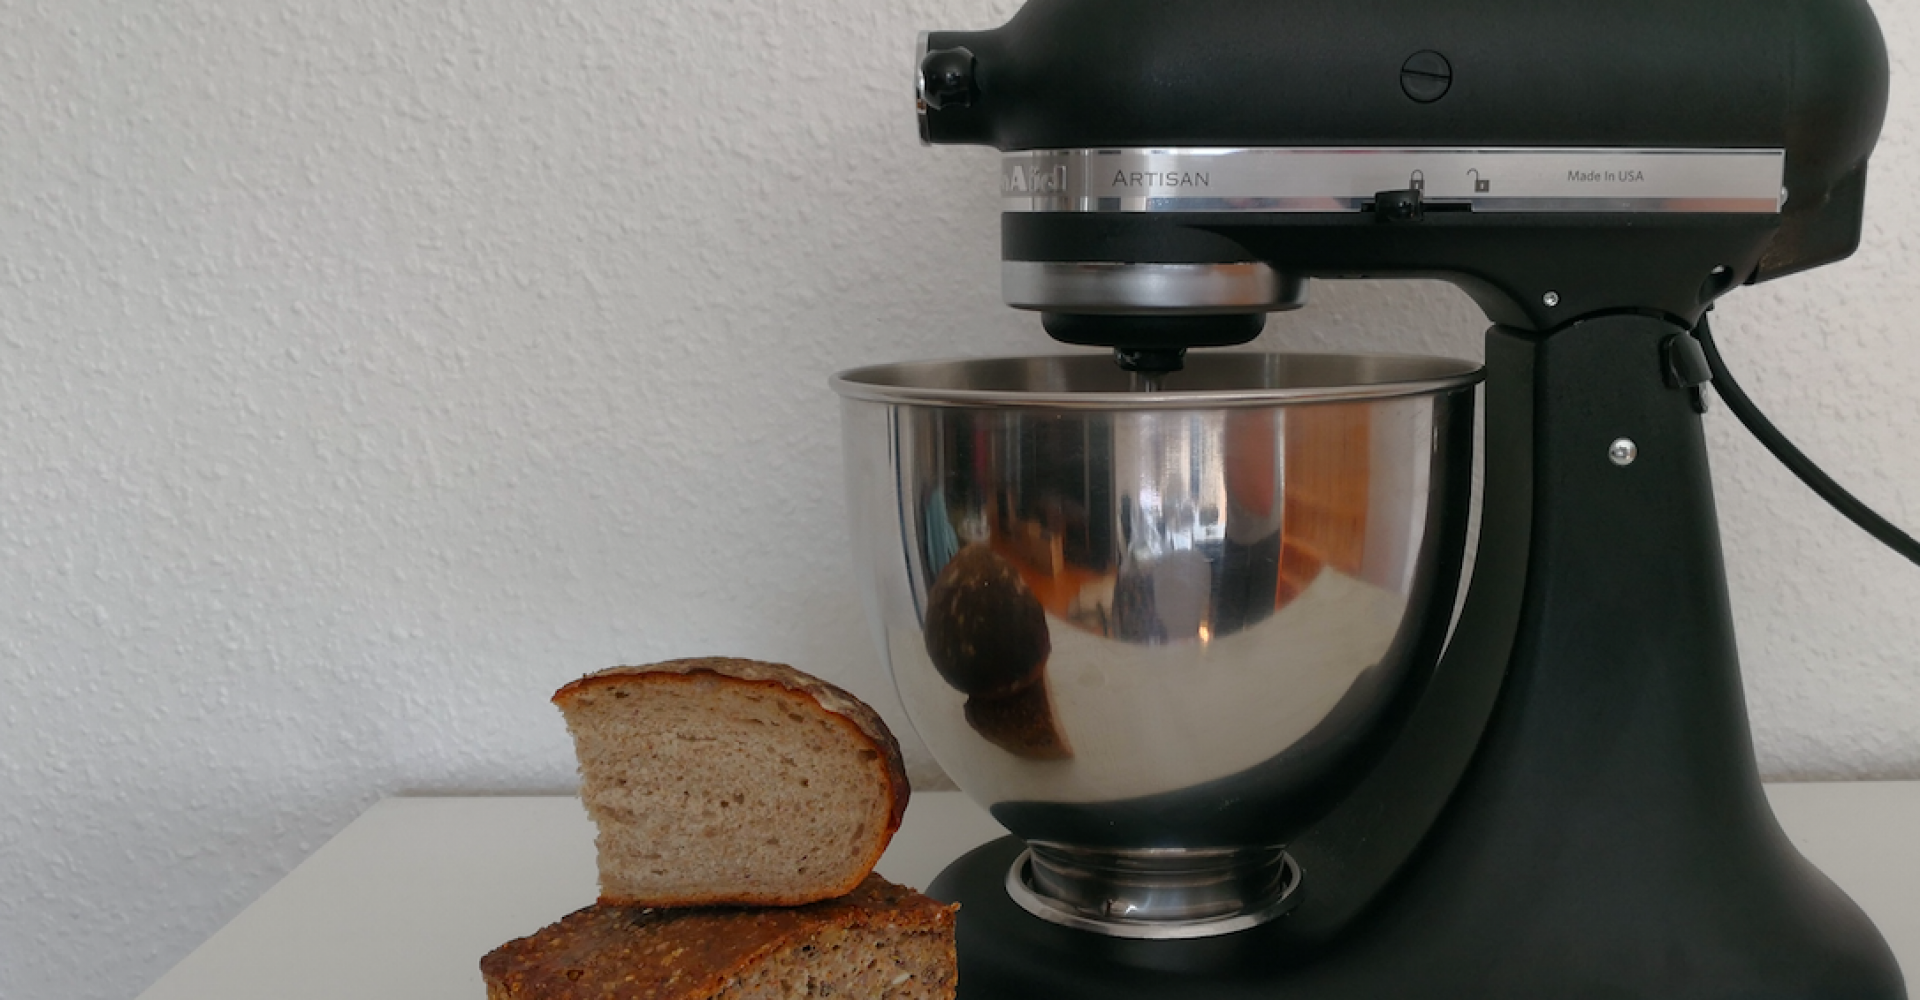 Test af køkkenmaskiner - Artisan - Mandekogebogen